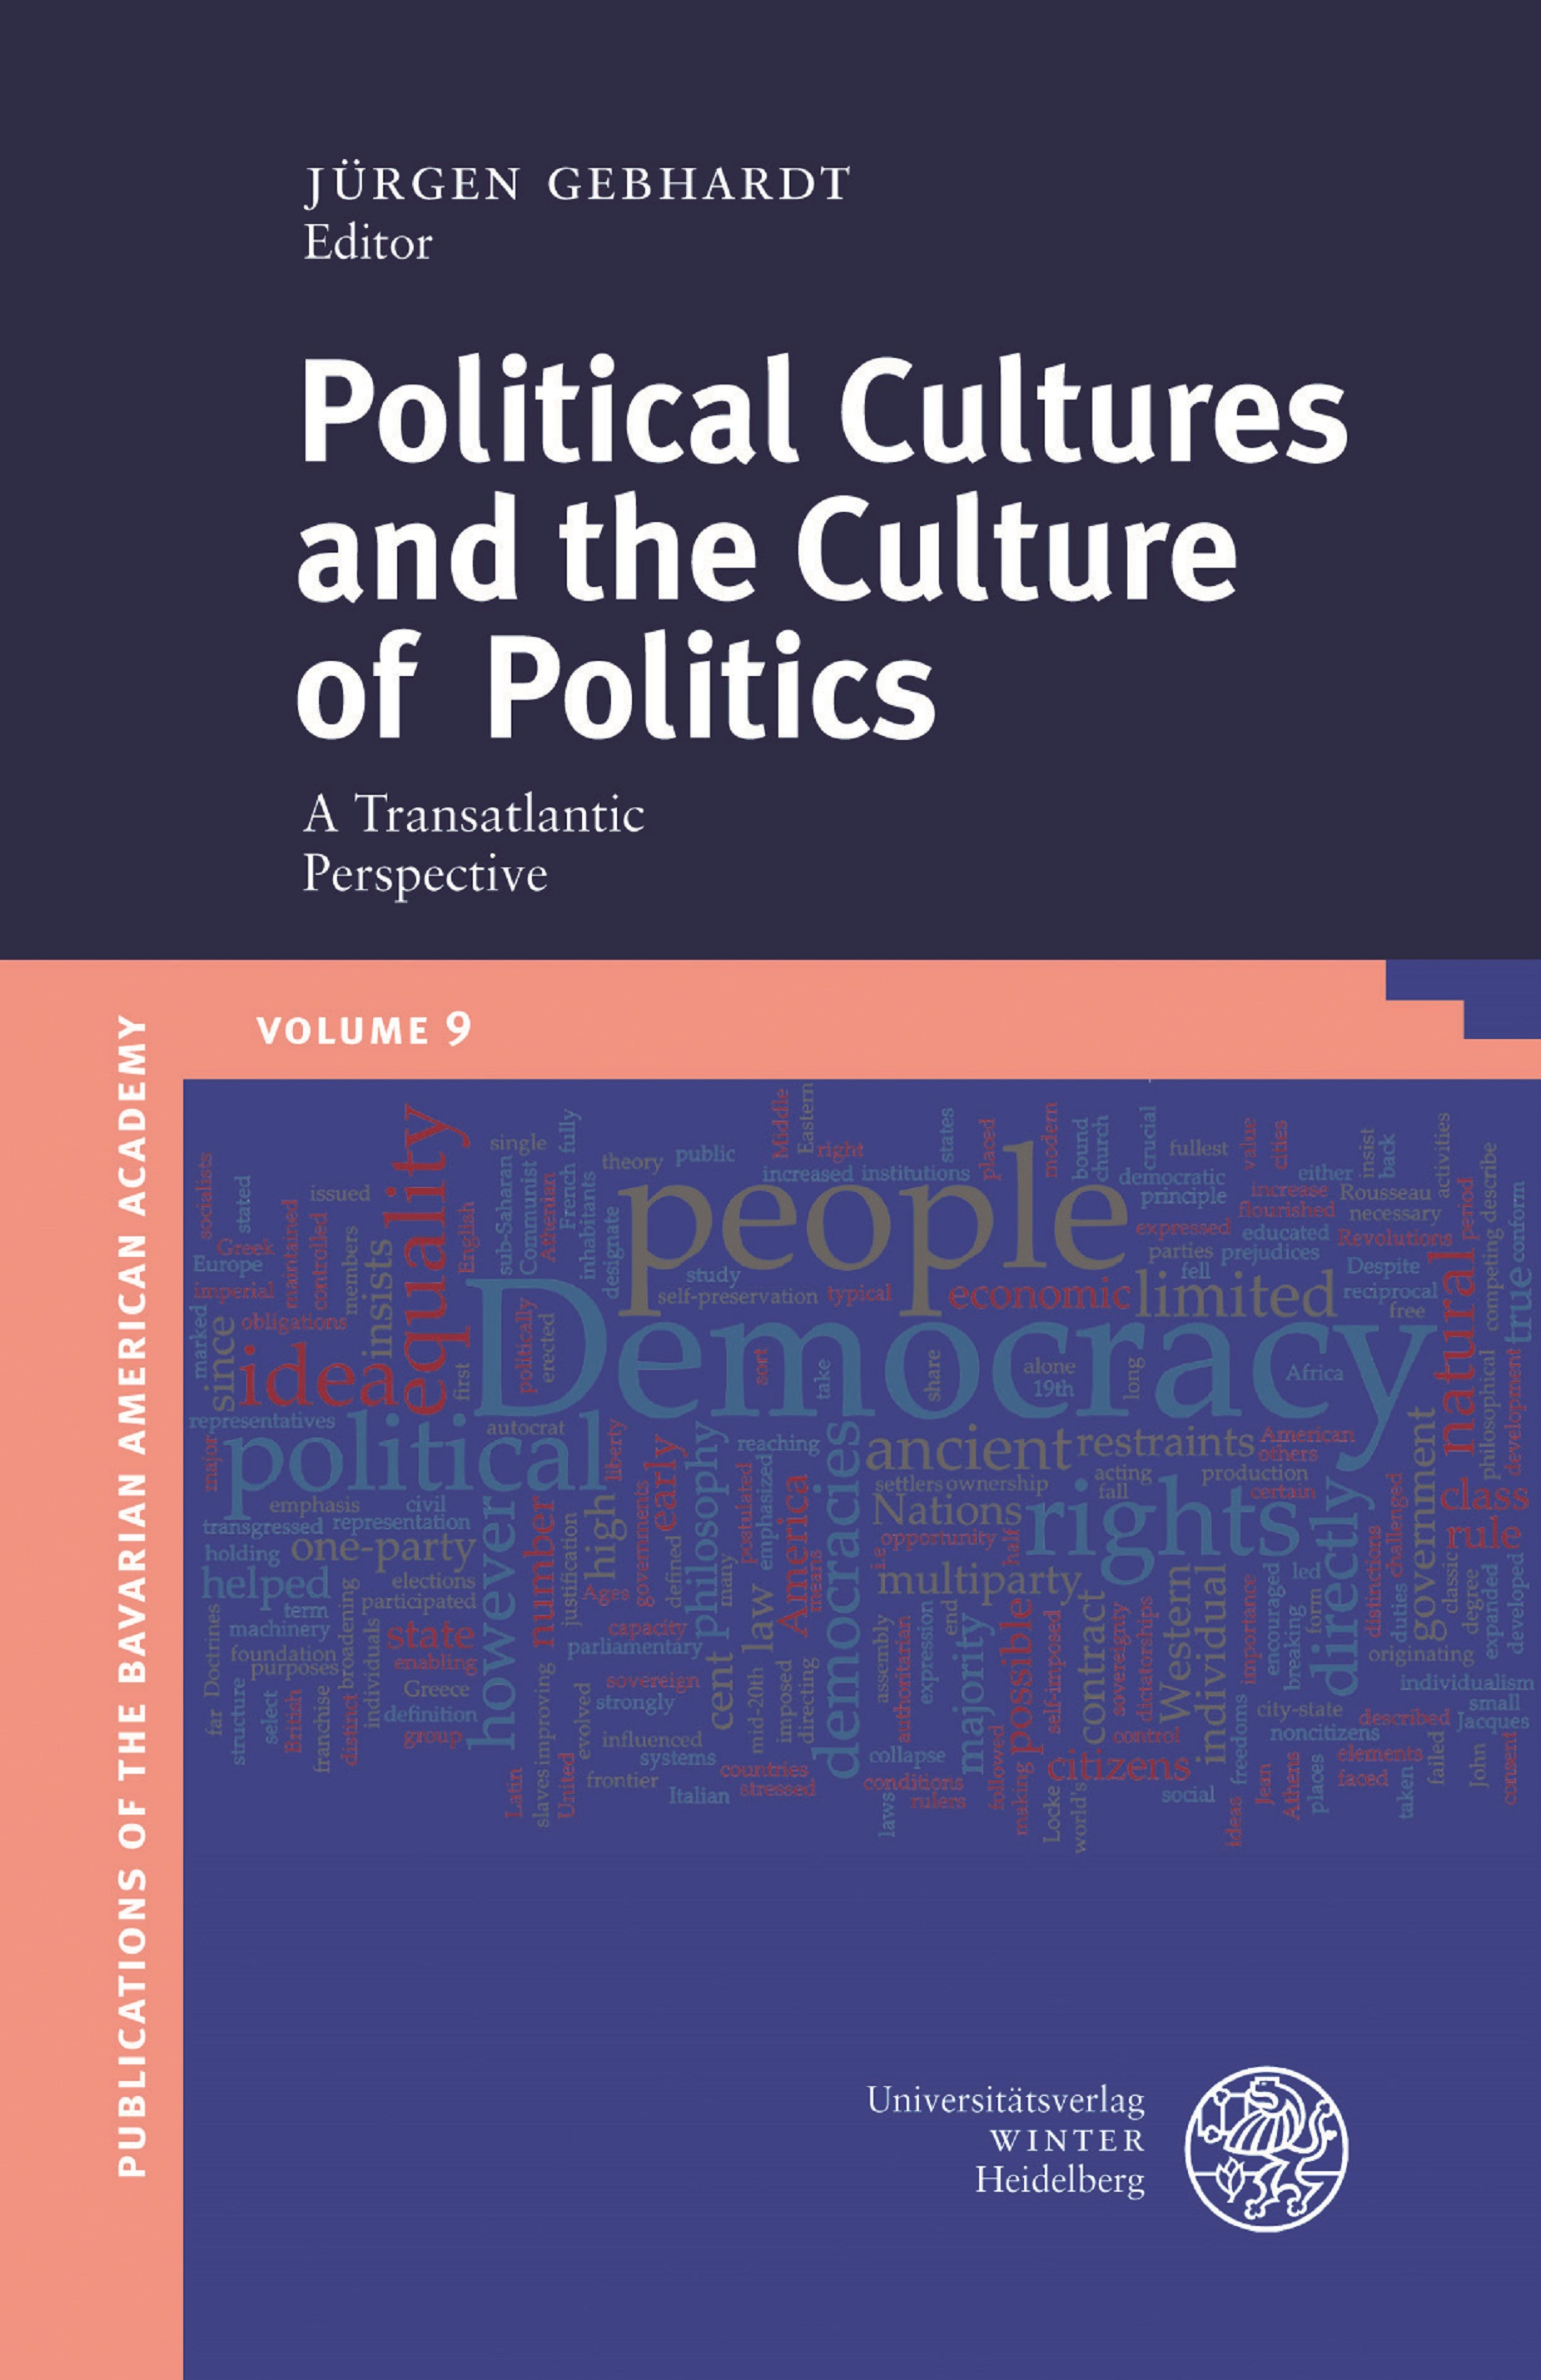 BAA publication Vol. 9 Political Cultures and the Culture of Politics